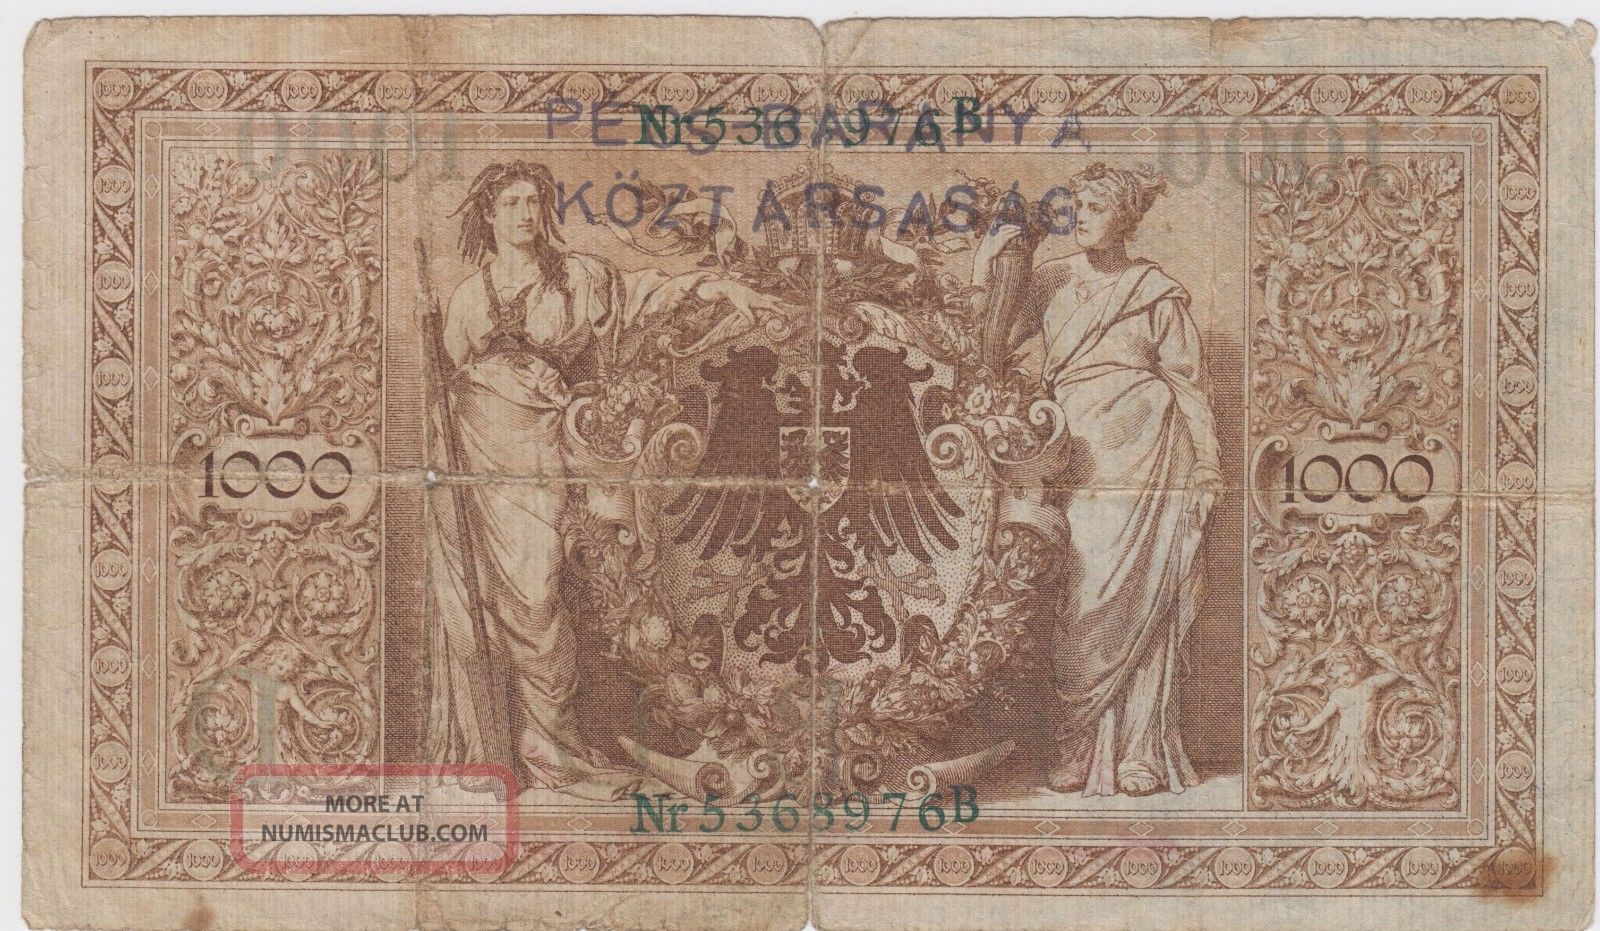 Baranya Bajai Szerb Magyar Köztársaság Stamp - 1000 Mark 1910 - Reichsbanknote Europe photo